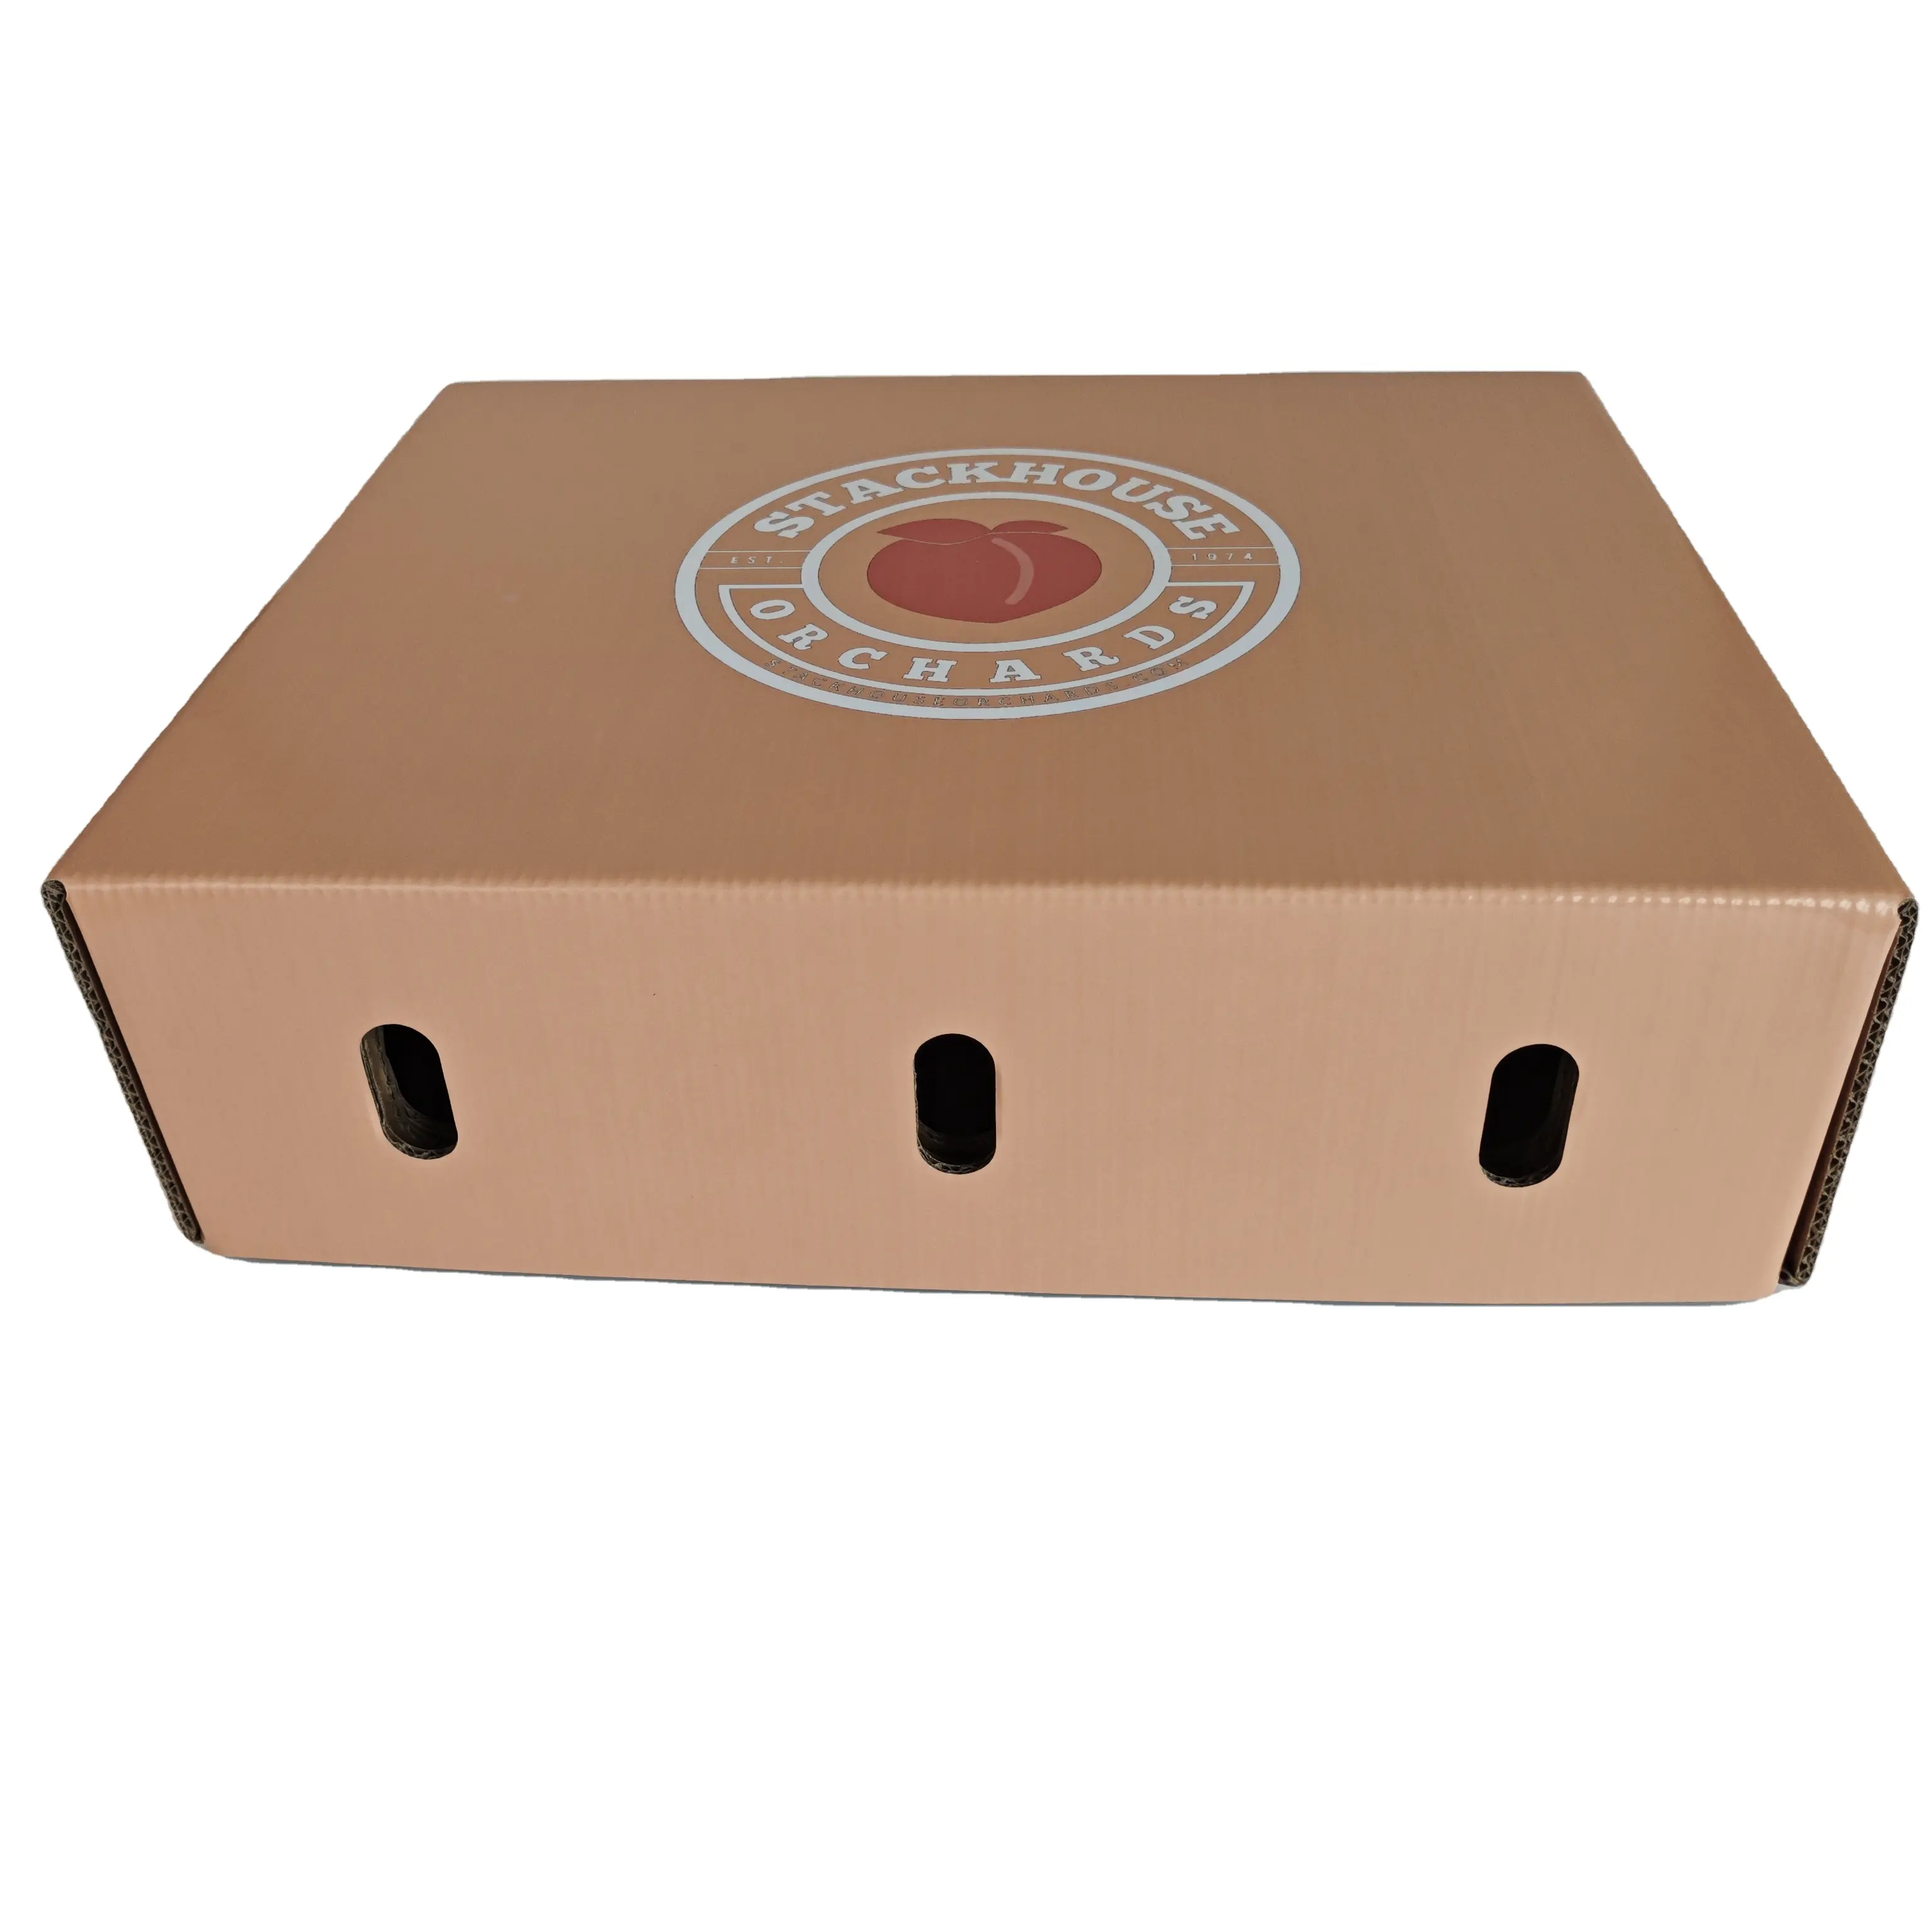 Großhandel benutzerdefiniertes Design mehrere Größen hochwertiger Karton wellpappe Fruchtverpackungsboxen frischer pfirsich-Kartonbox